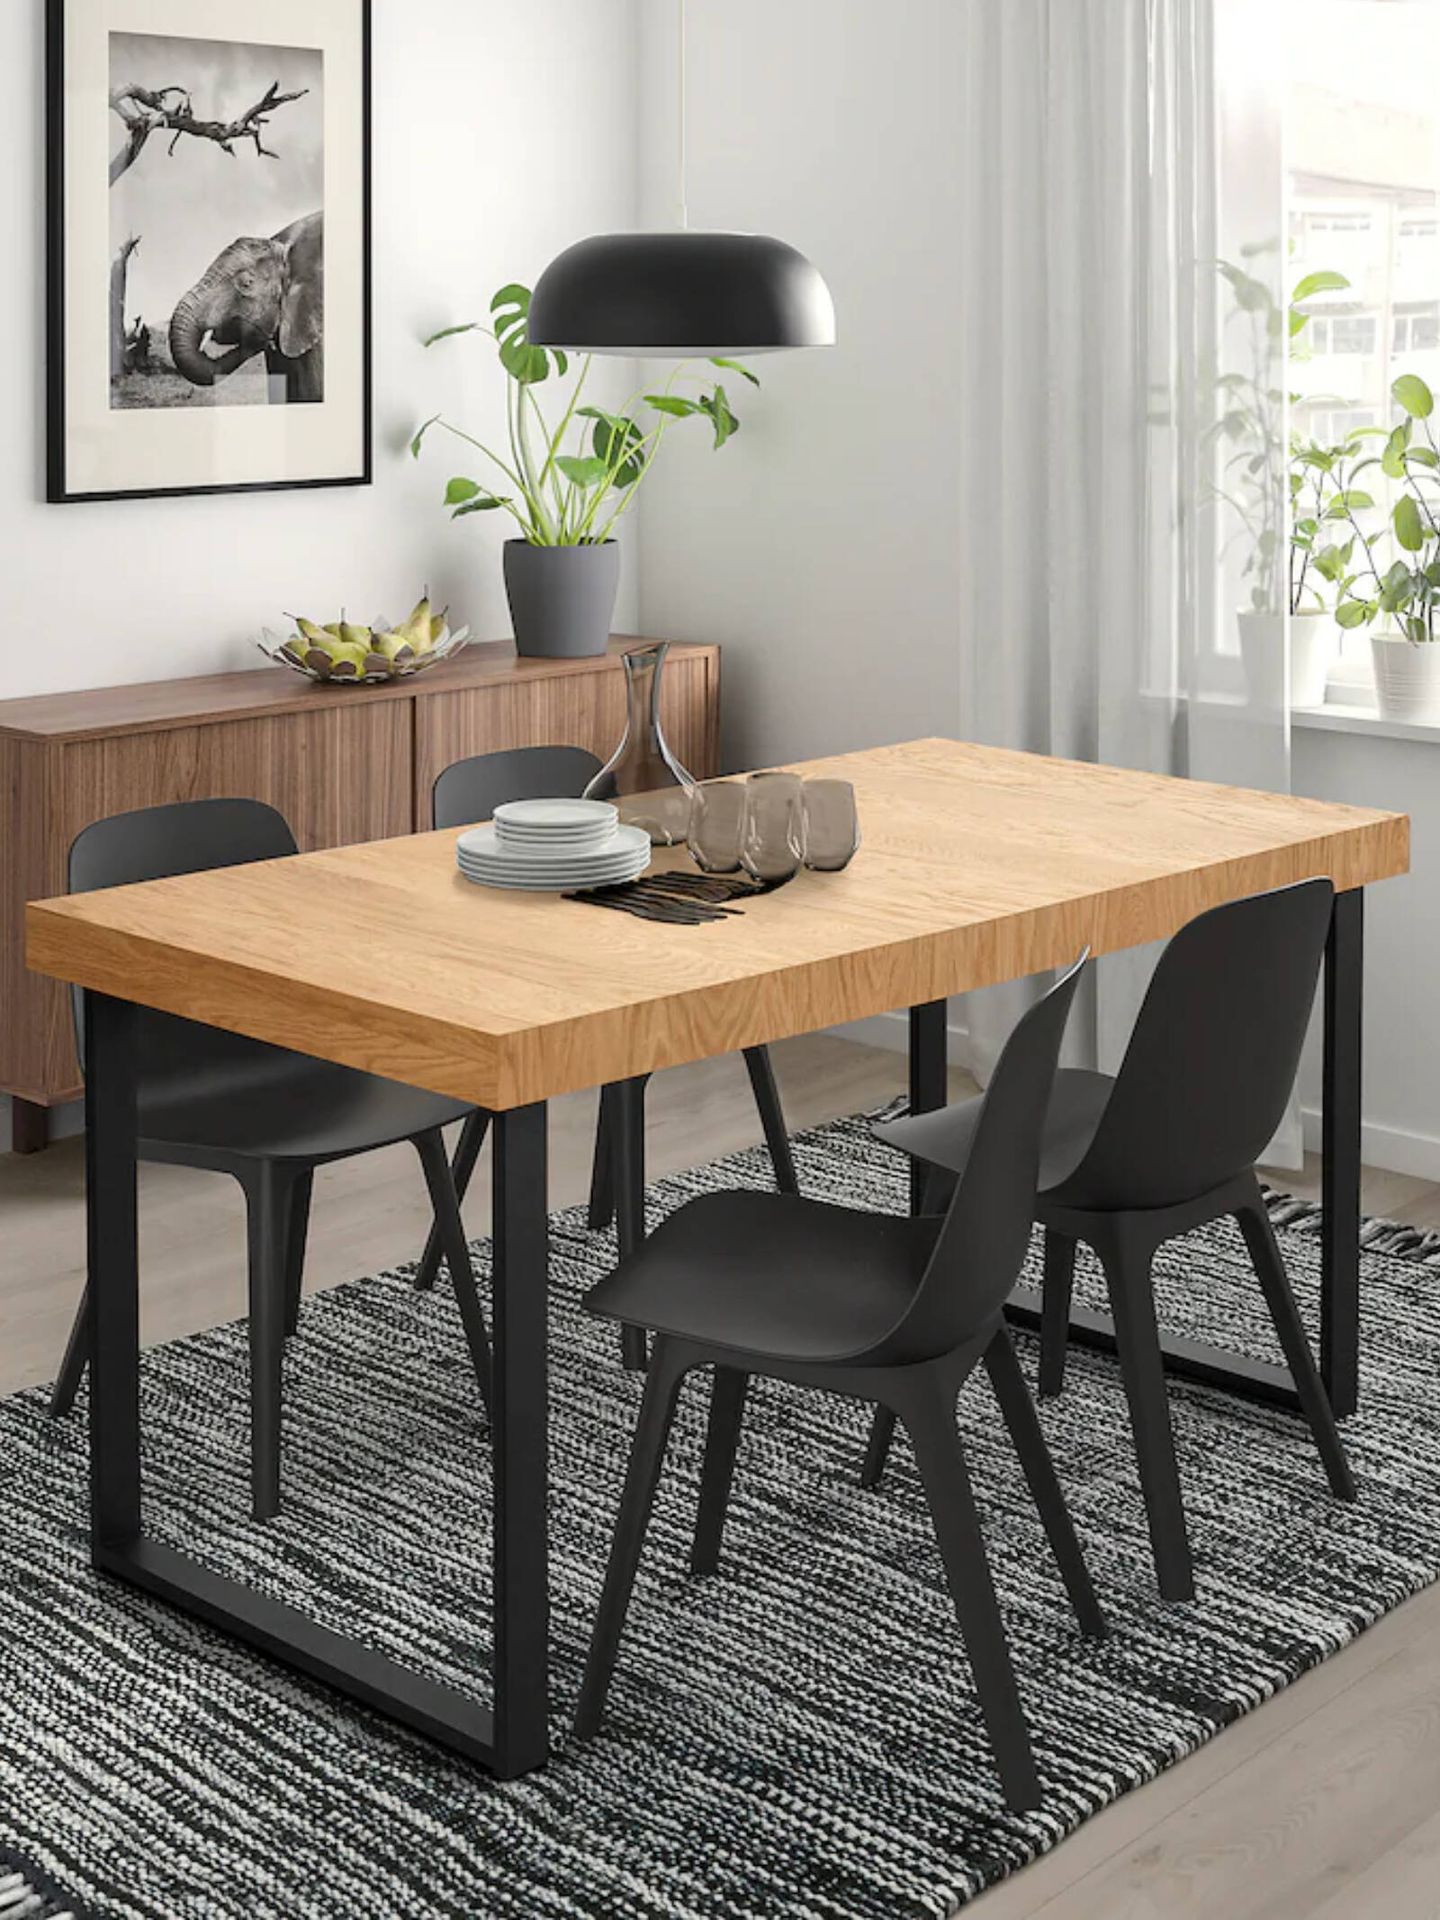 El nuevo mueble de Ikea es ideal para casas pequeñas. (Cortesía/ Ikea)